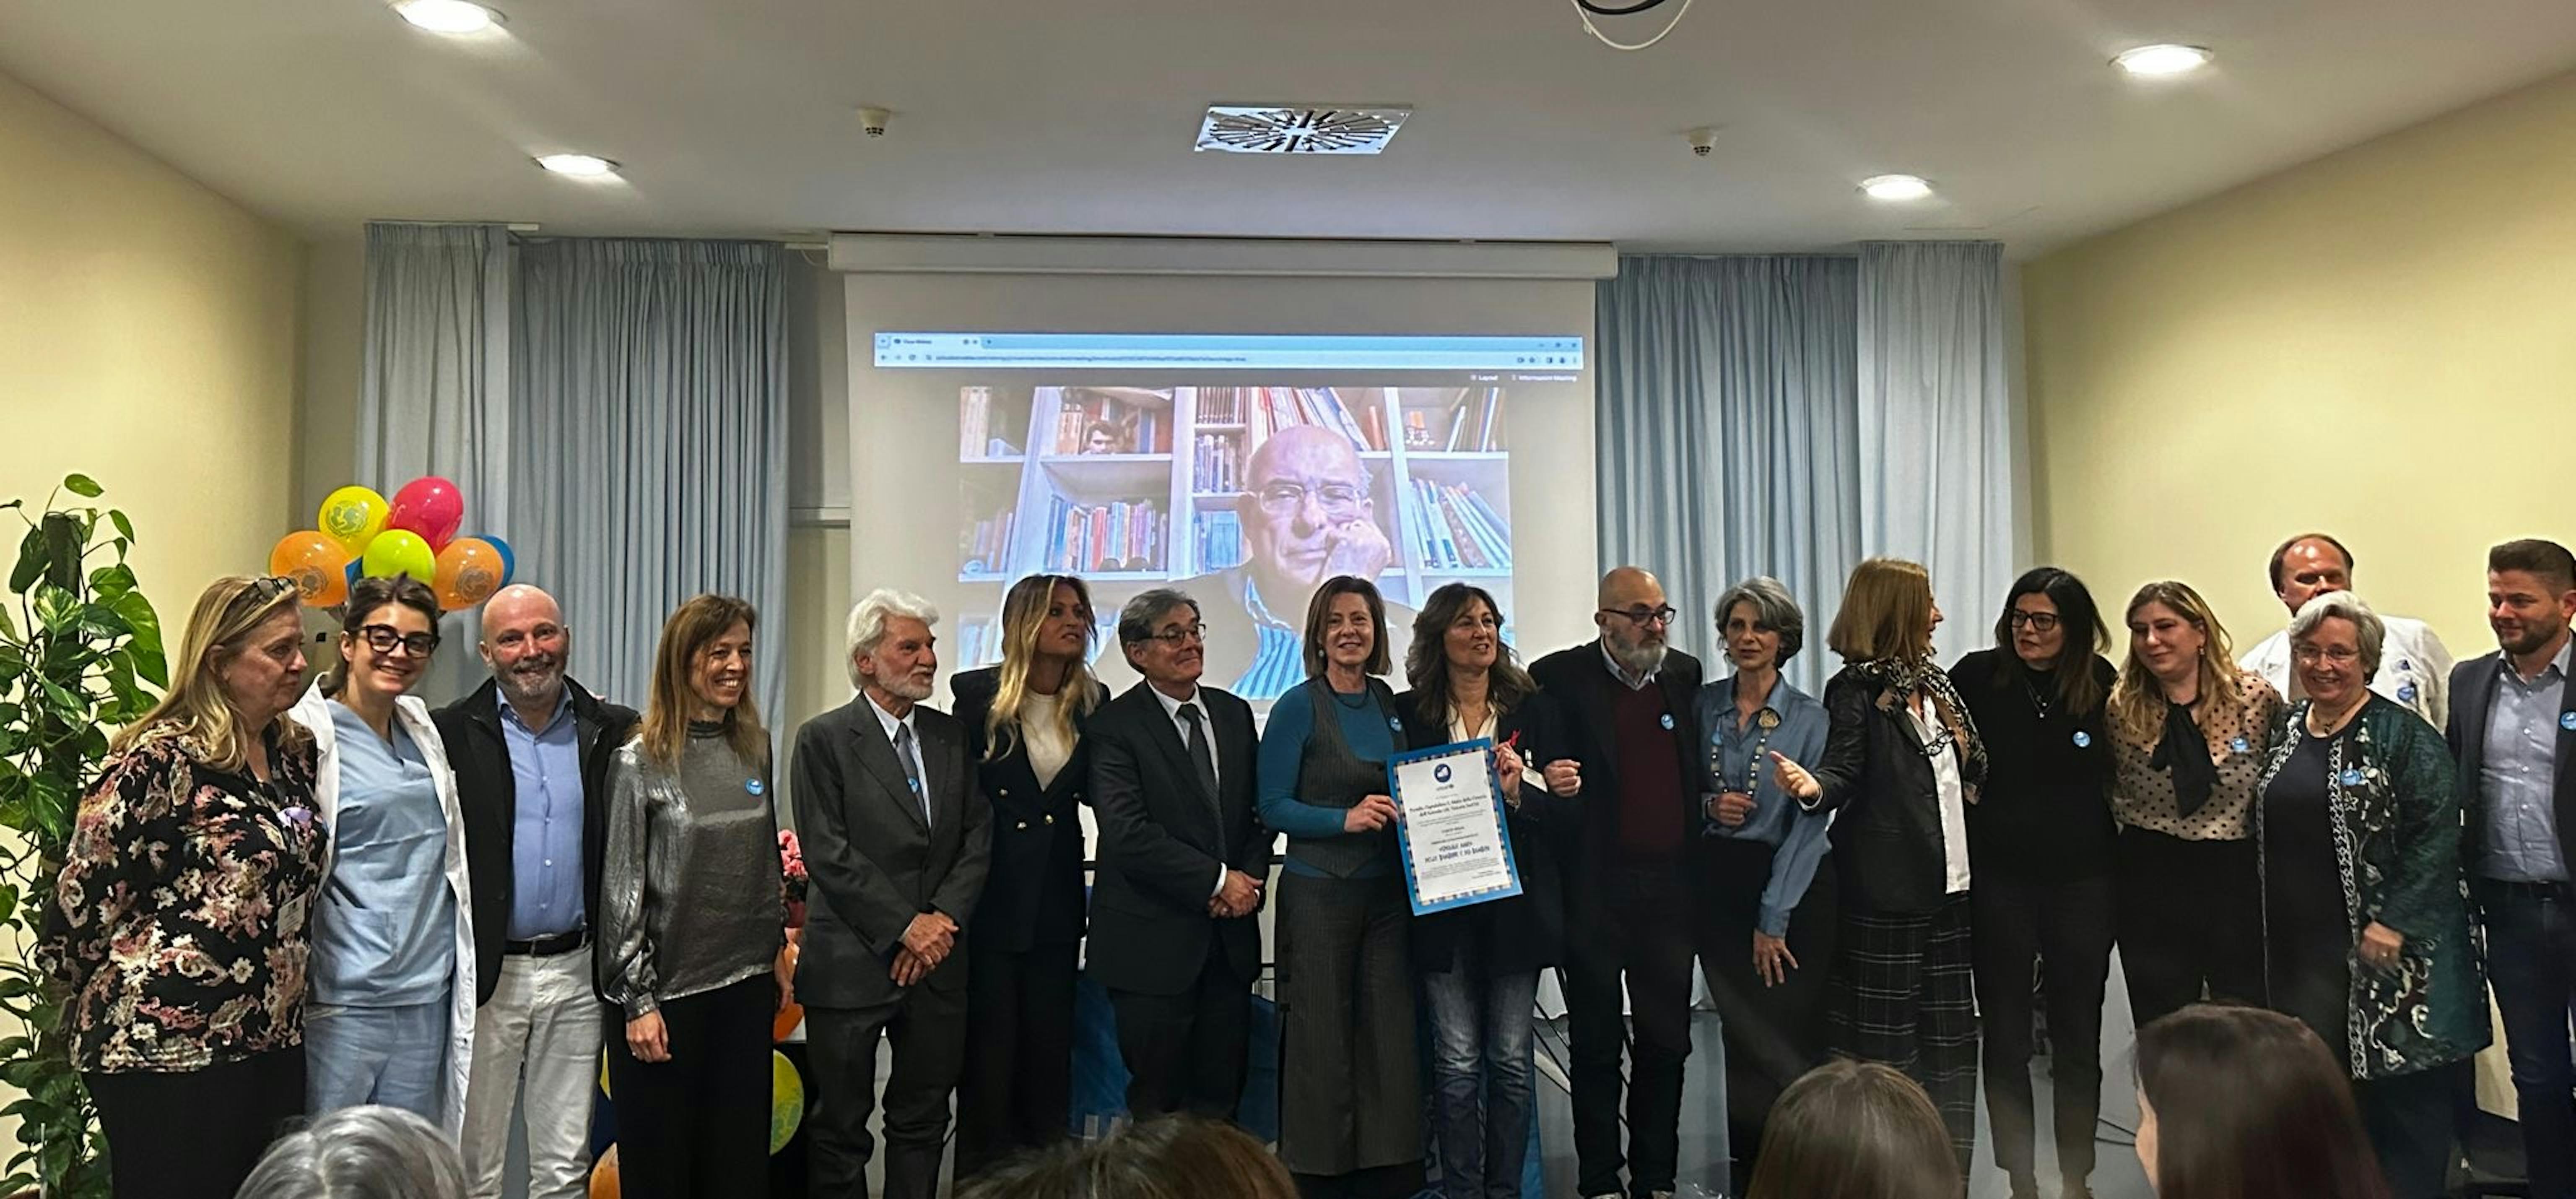 Foto di gruppo dell'ospedale di Montevarchi  e lo staff UNICEF con la pergamena